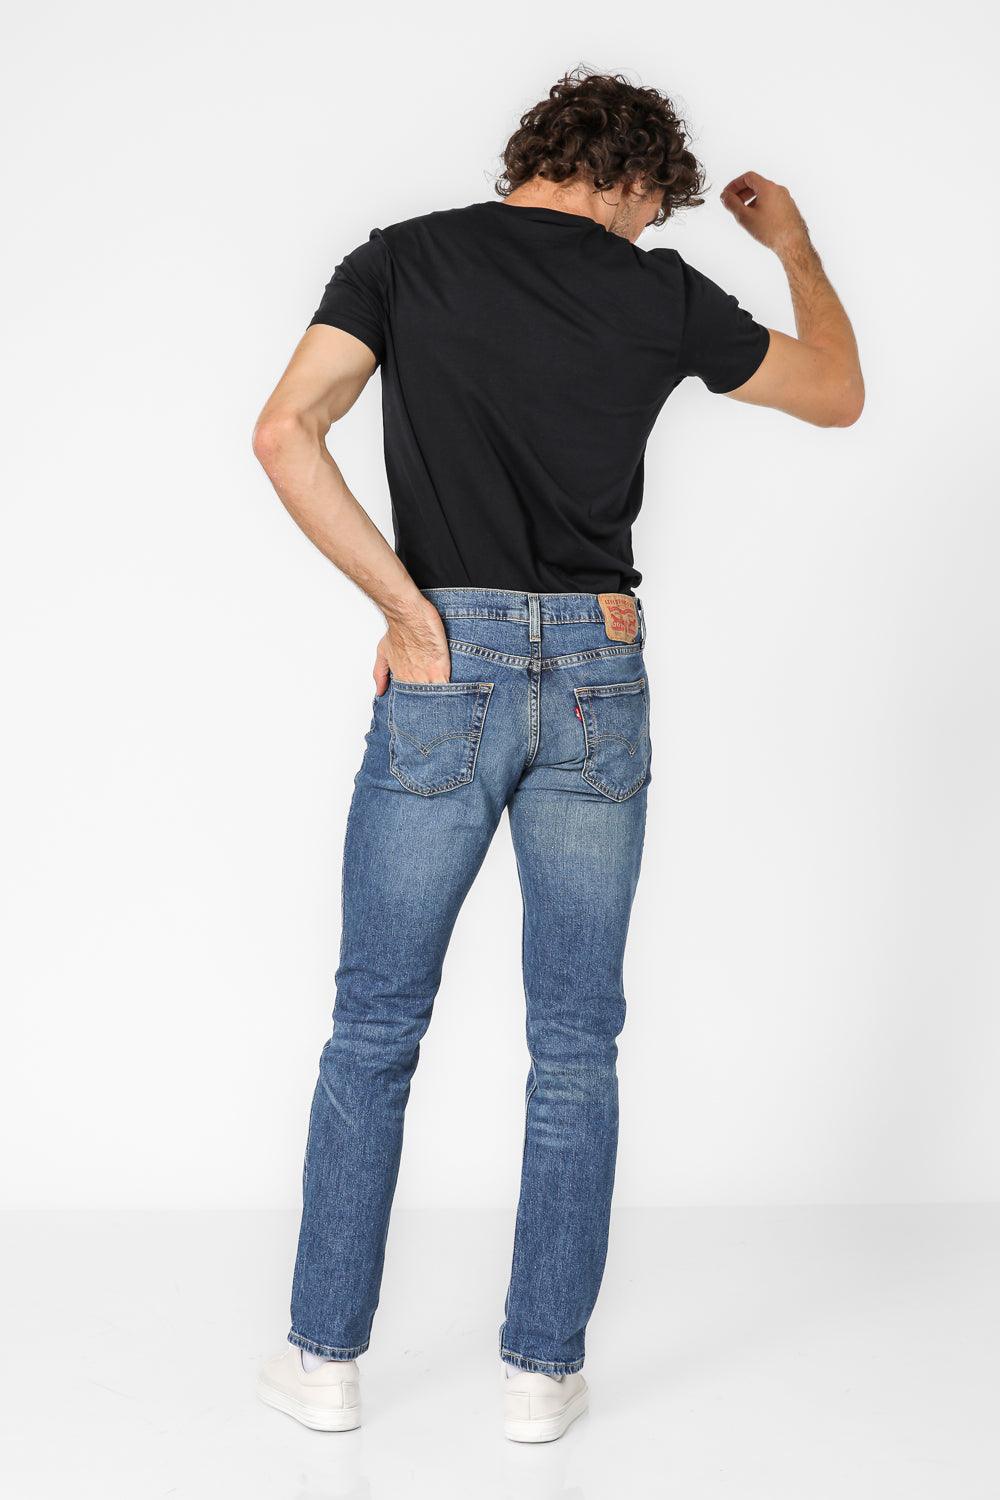 LEVI'S - ג'ינס משופשף MED INDIGO 511 SLIM - MASHBIR//365